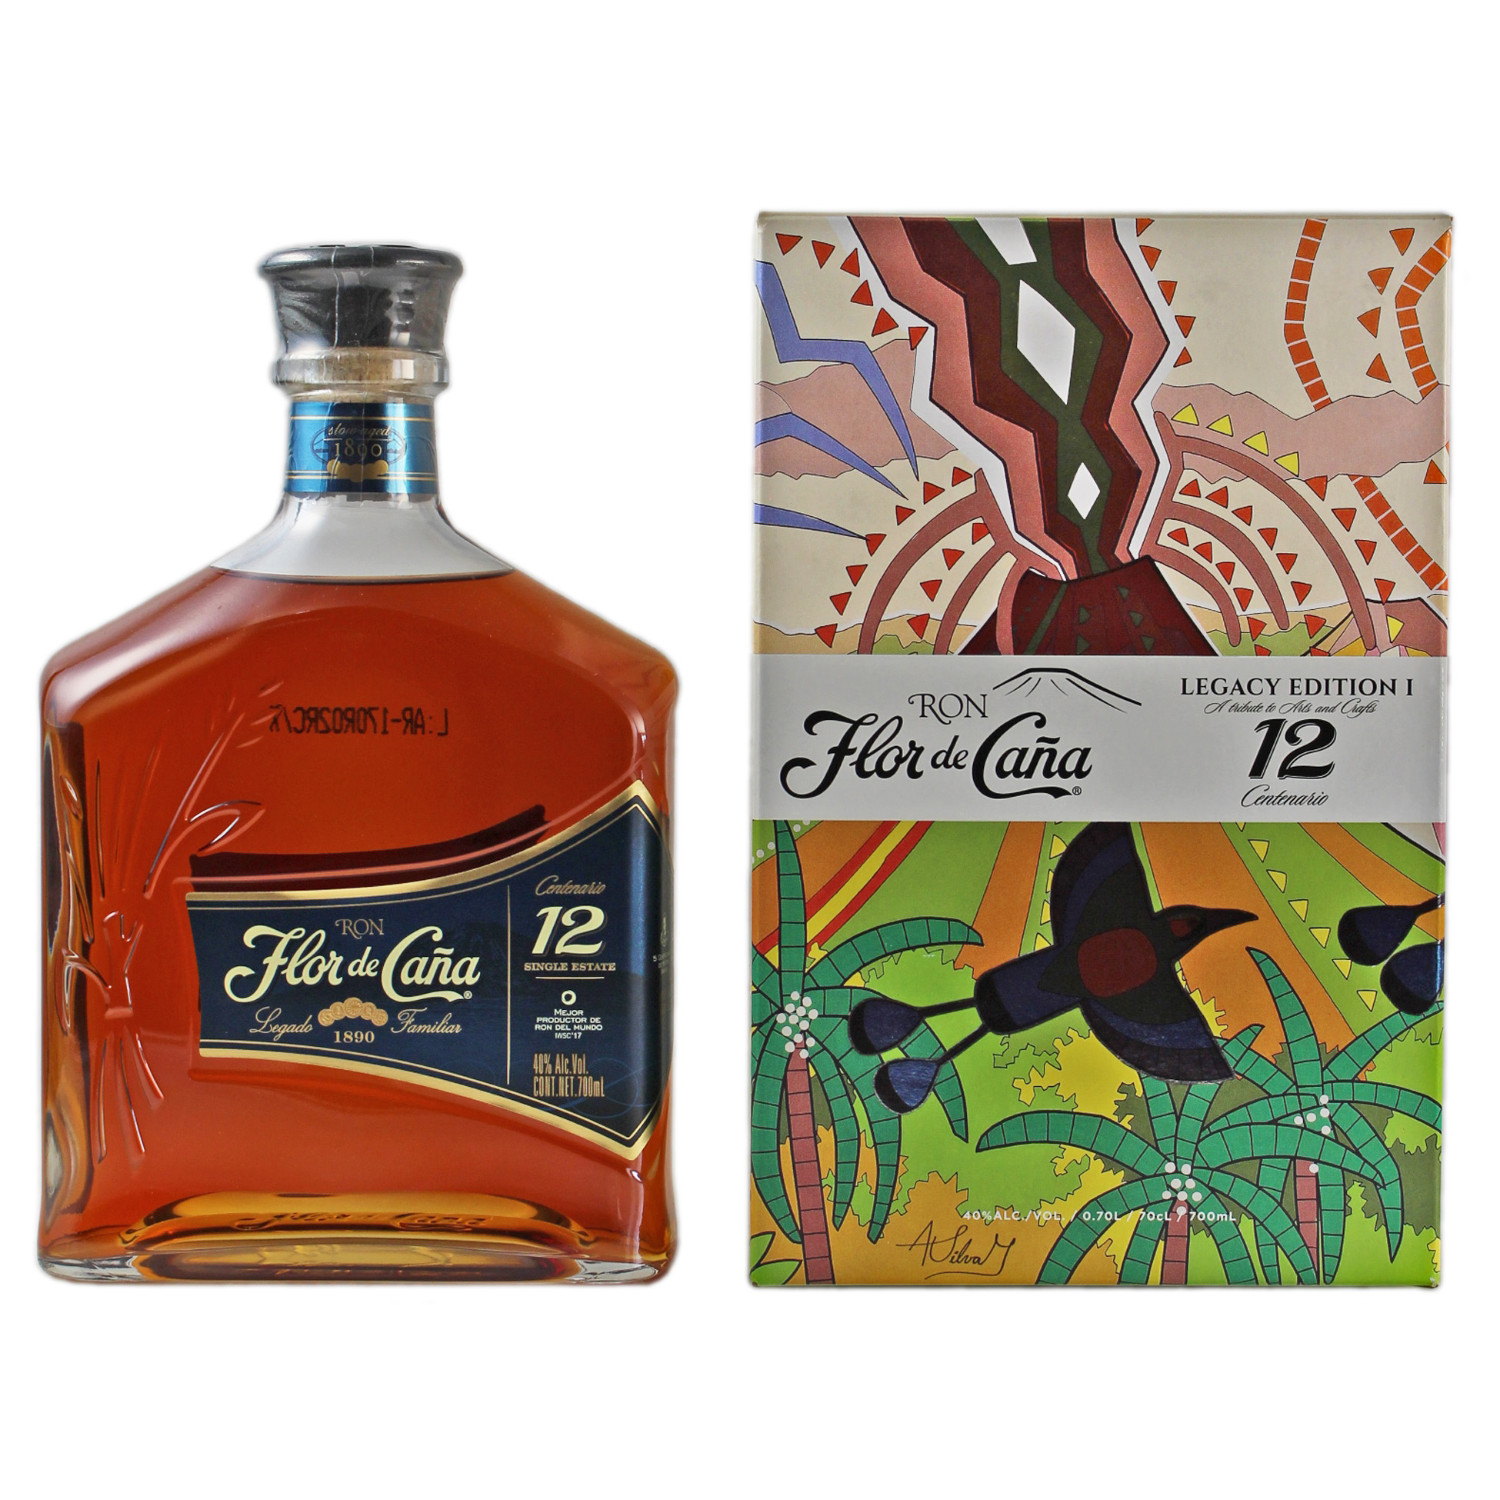 Jahre - Centenario de Nicaragua - l 12 Flor Cana Vol. 40% Gourmetage 0,70 Rum |